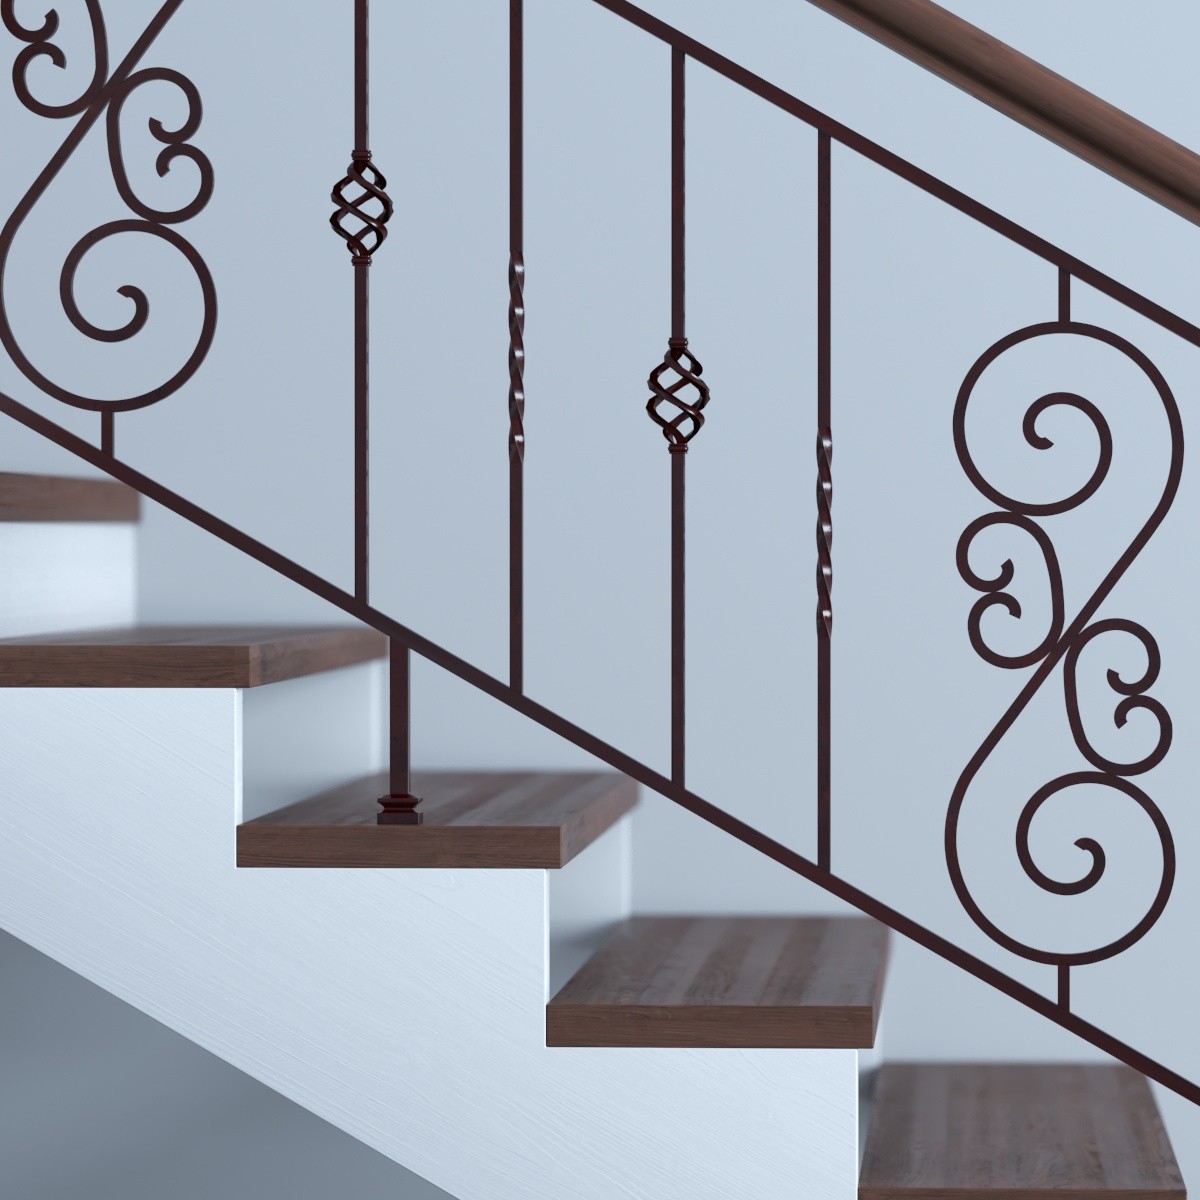 Кованые лестницы: виды конструкций, проектирование и изготовление